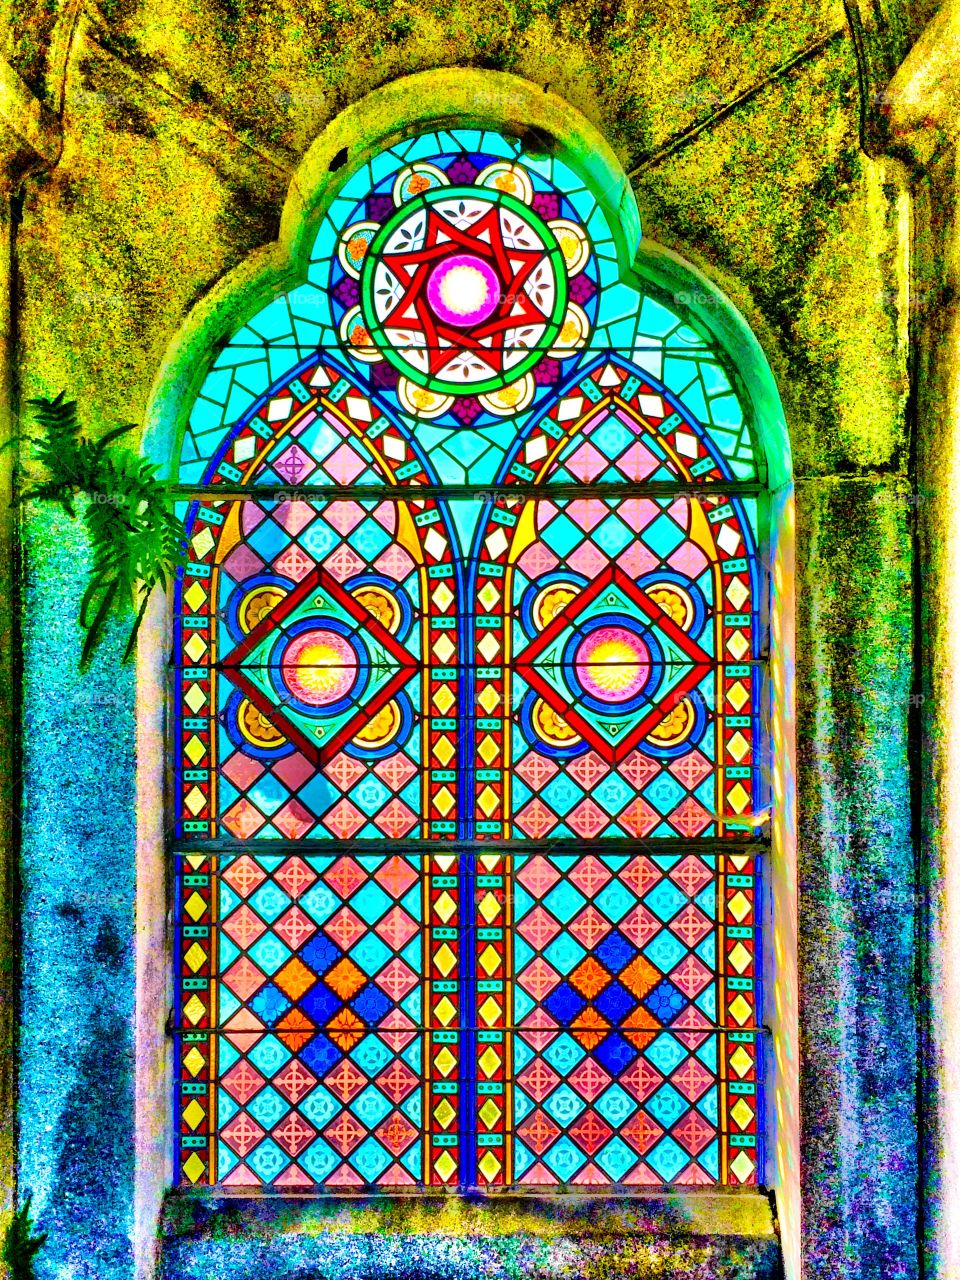 Colored glass